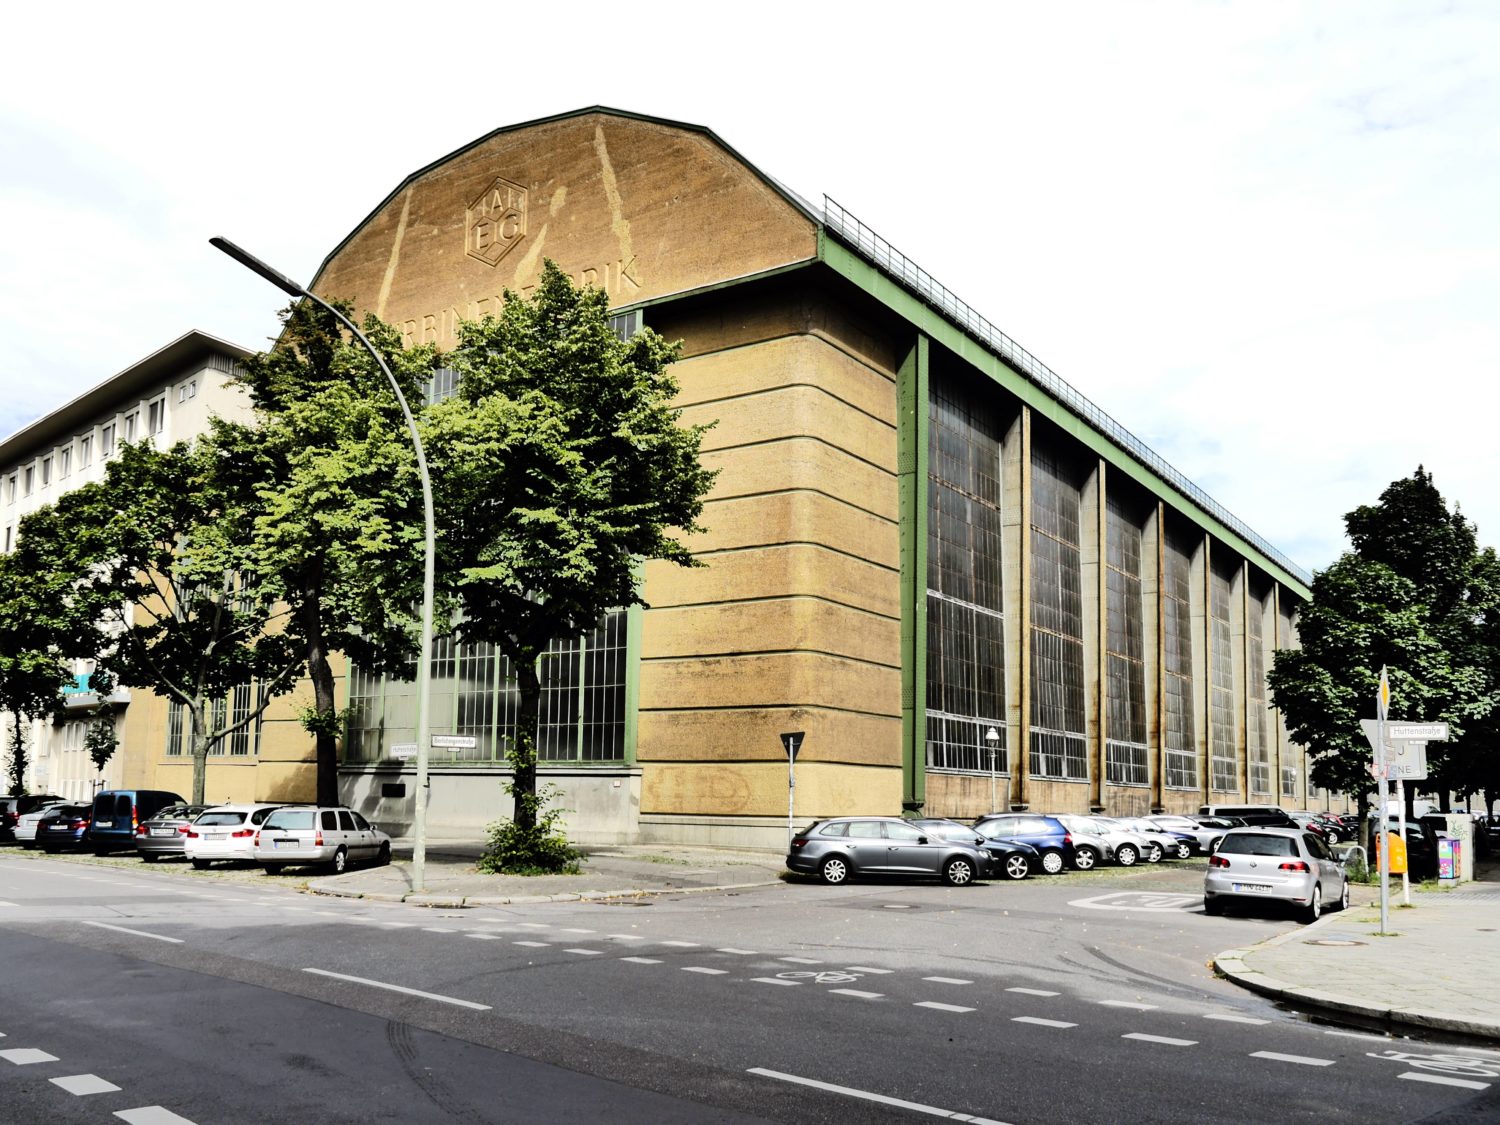 Moderne Architektur in Berlin: Ehemalige AEG Turbinenfabrik des Architekten Peter Behrens. Foto: Imago/Jürgen Ritter